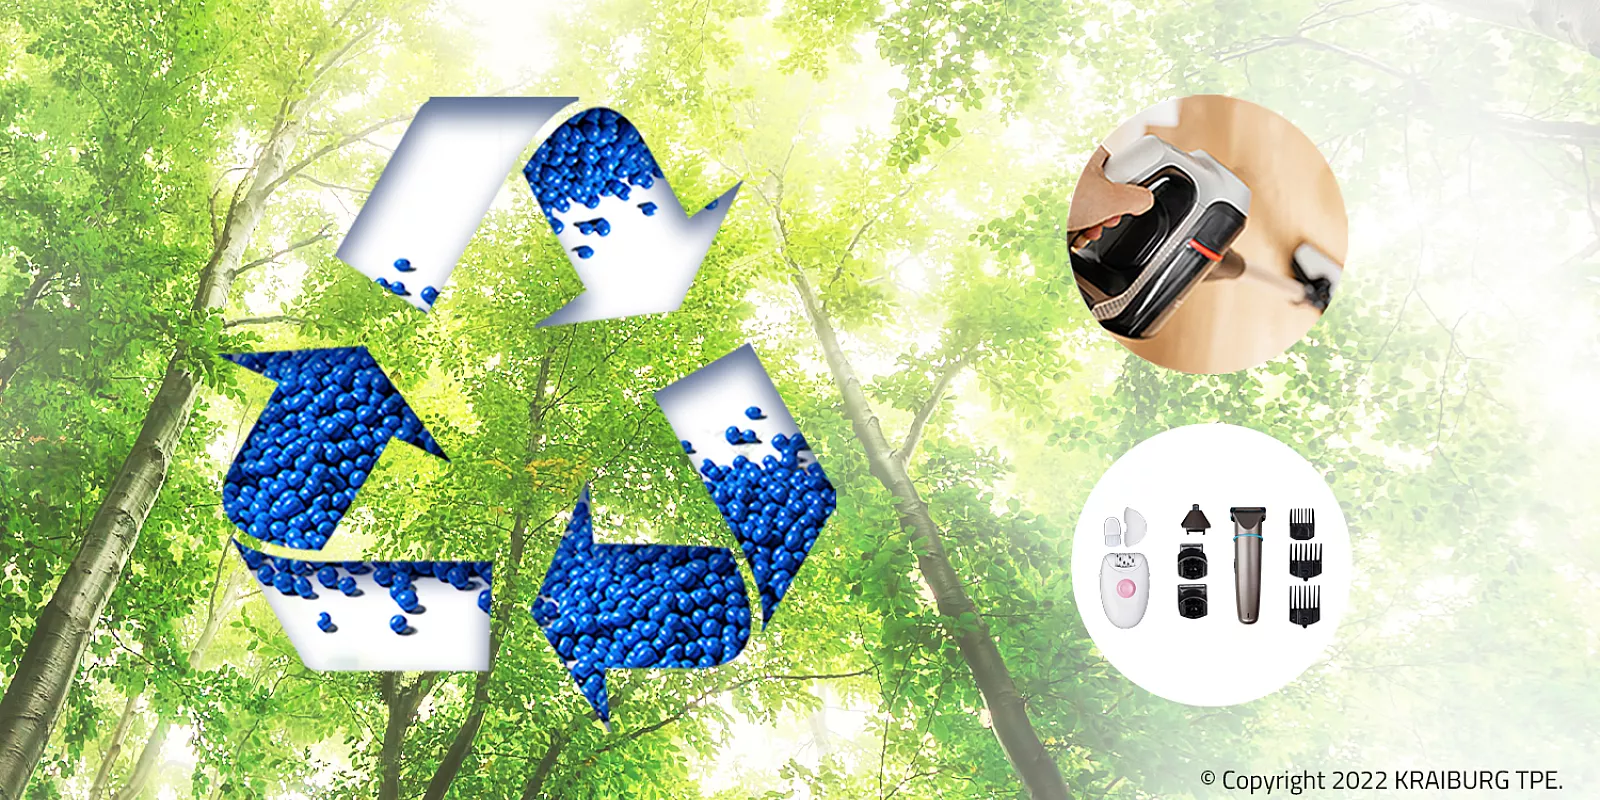 凯柏胶宝® 针对亚太市场研发的全新创新型可回收 TPE